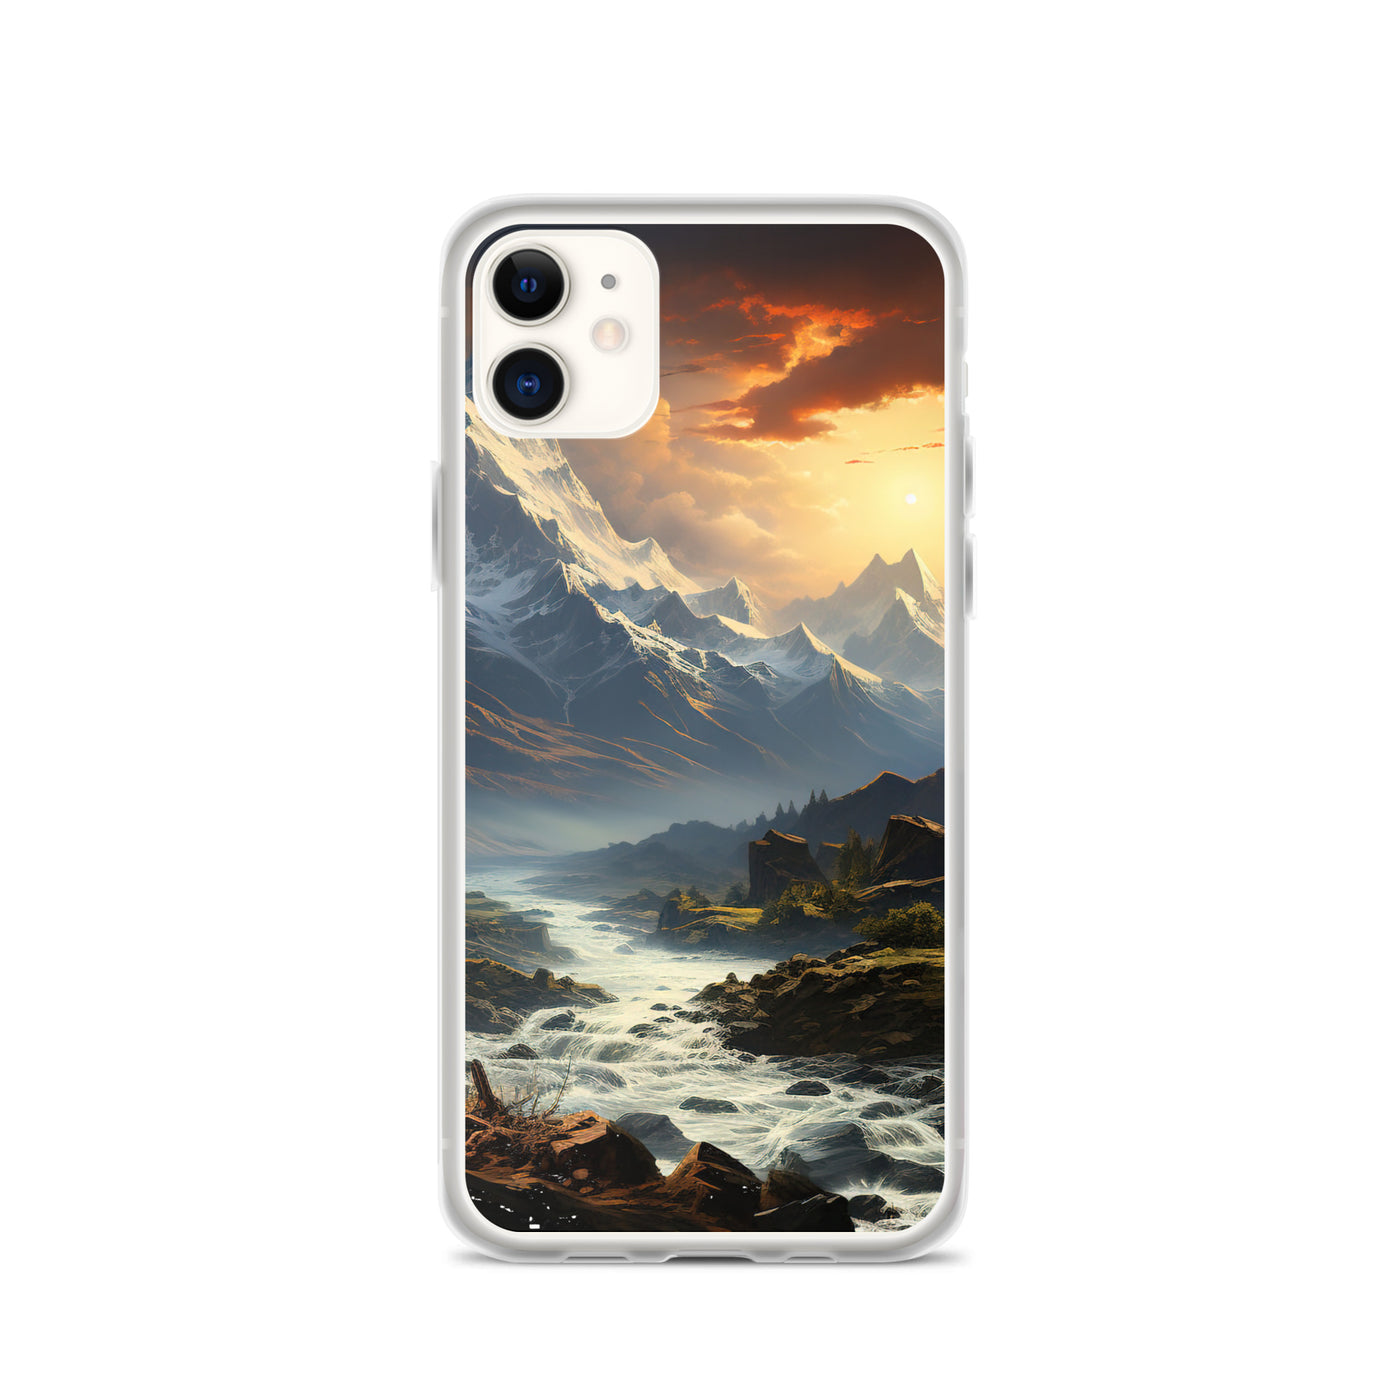 Berge, Sonne, steiniger Bach und Wolken - Epische Stimmung - iPhone Schutzhülle (durchsichtig) berge xxx iPhone 11